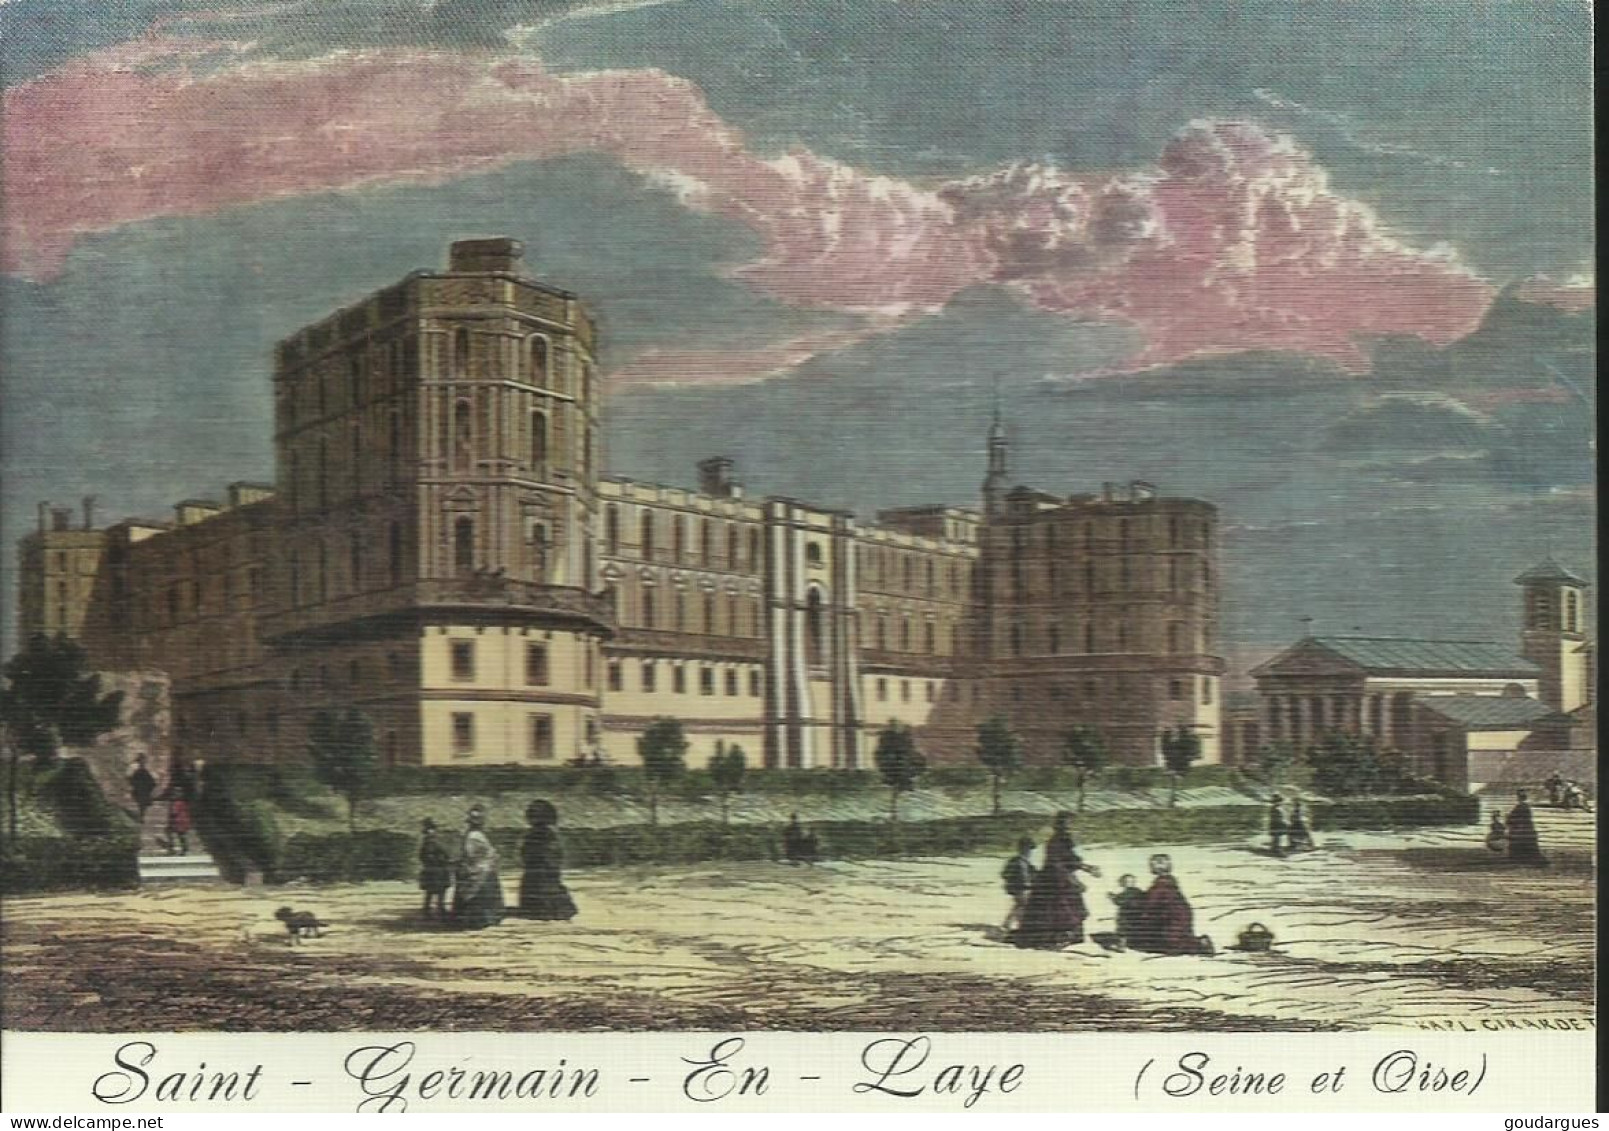 Saint-Germain-en-Laye - Au Temps Jadis - Le Château - (P) - St. Germain En Laye (castle)